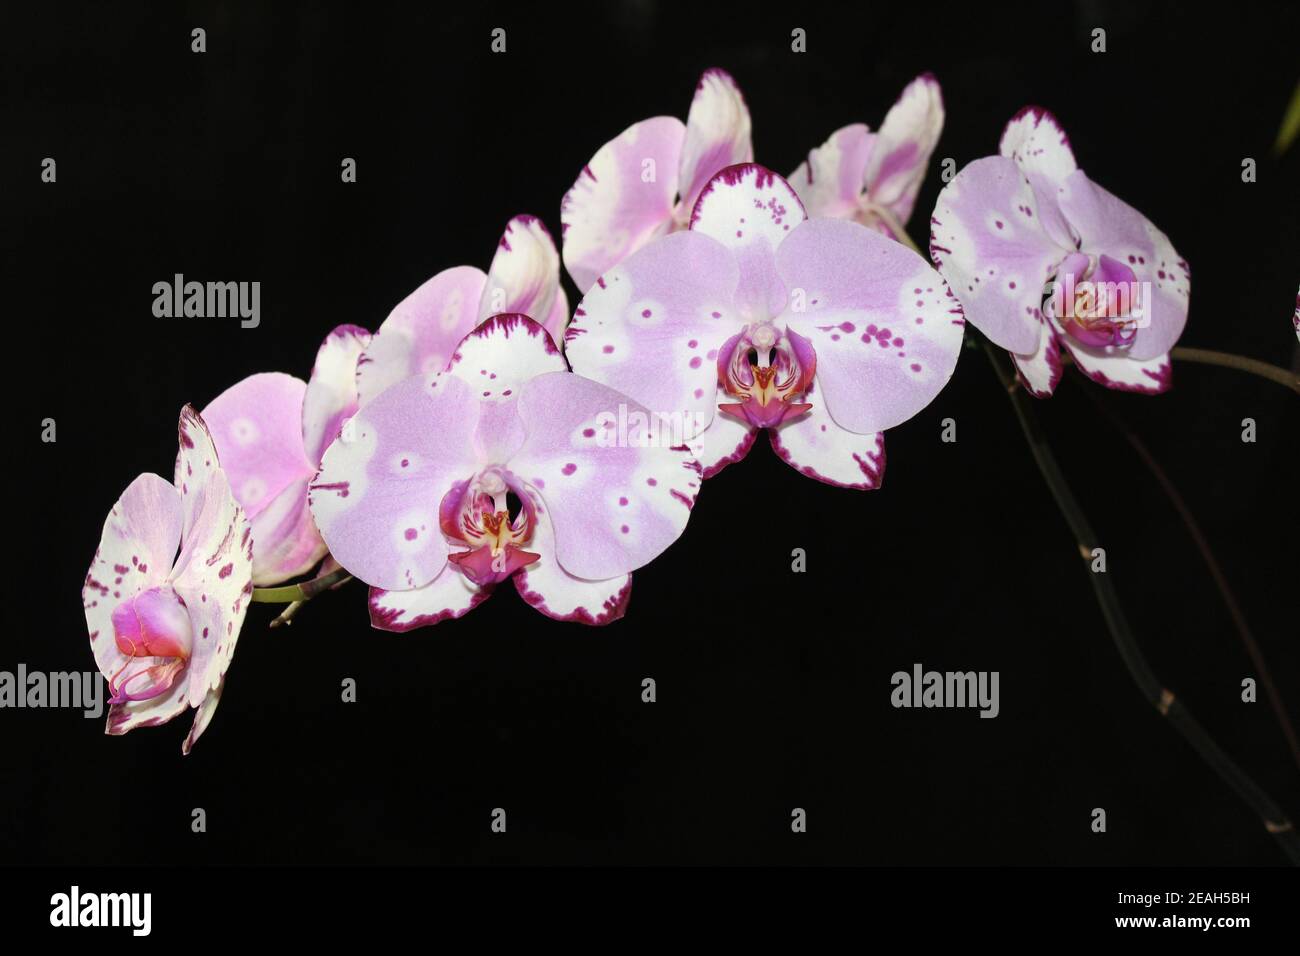 Plante d'orchidée rose et blanche Banque D'Images